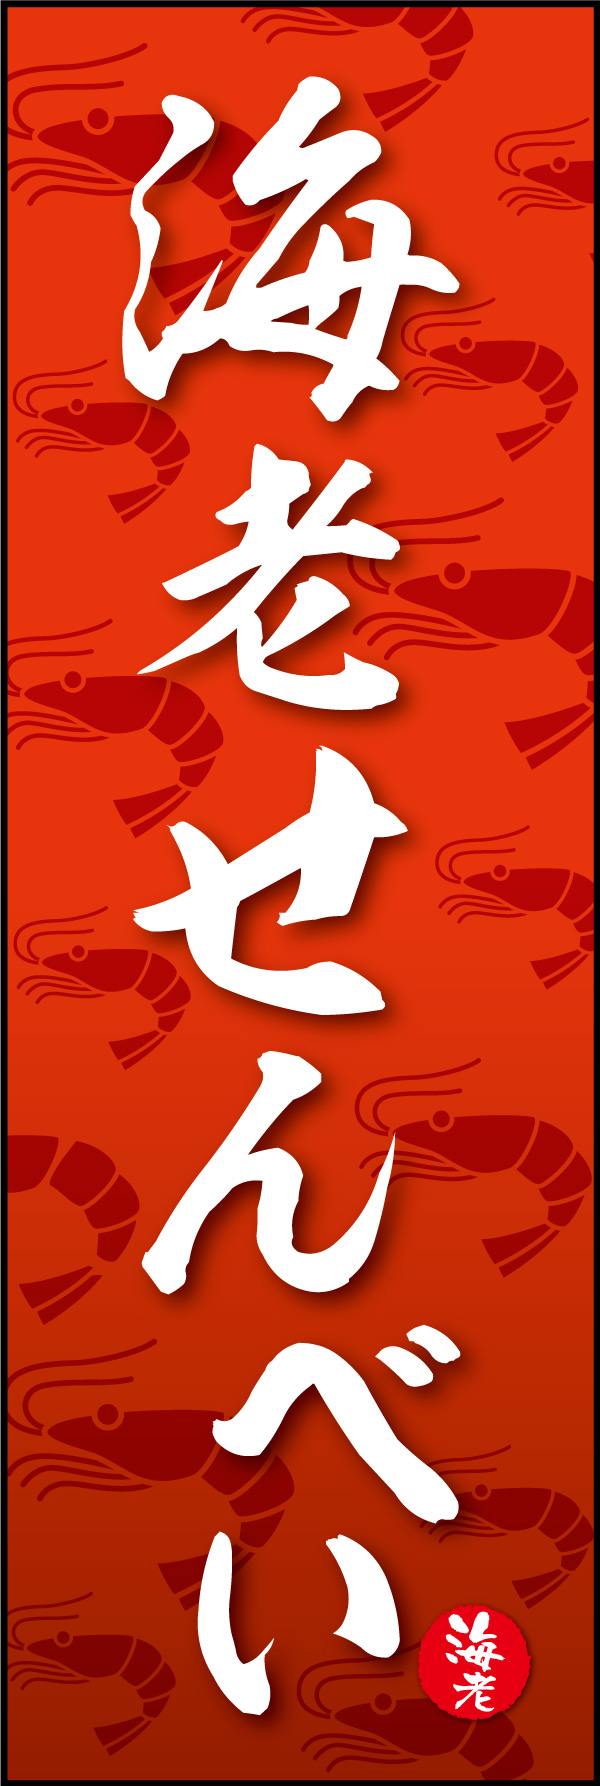 海老せんべい 06 「海老せんべい」の幟です。海老のイラストを全面に配置した、海老せんべい全開のデザインにしました。(Y.M)